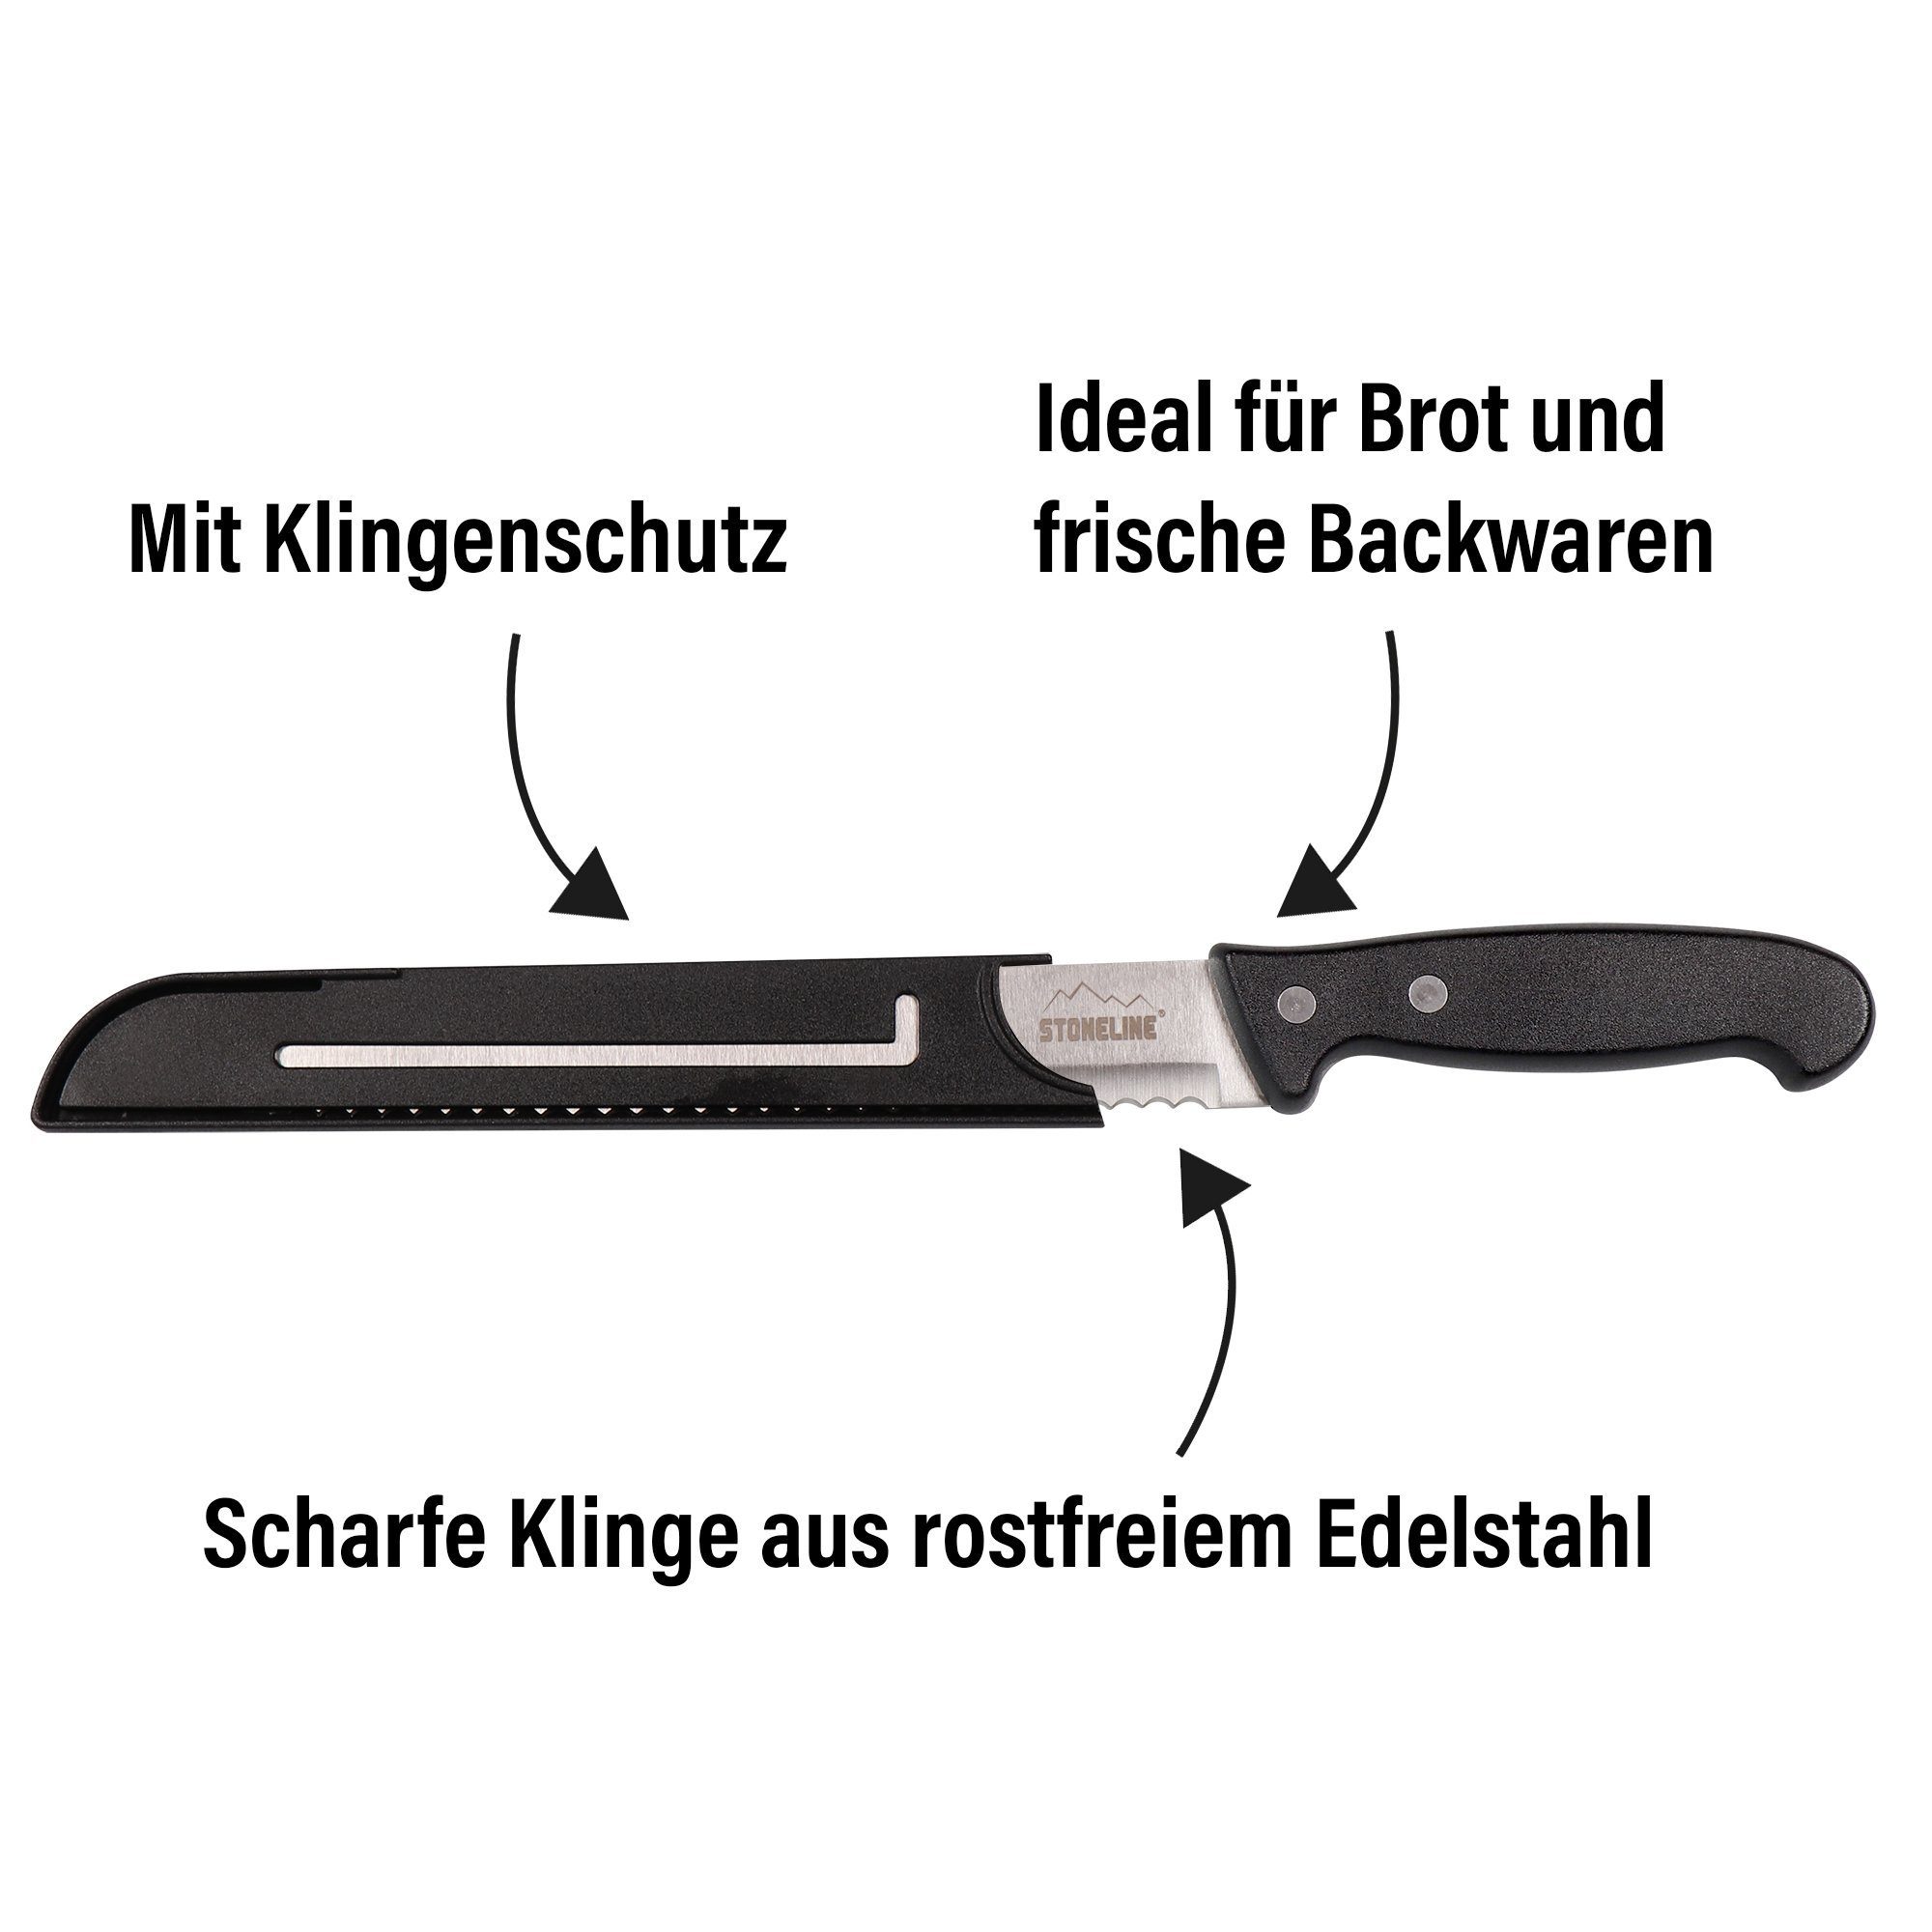 STONELINE Brotmesser, Edelstahl rostfrei, mit Germany Designed in Klingenschutz